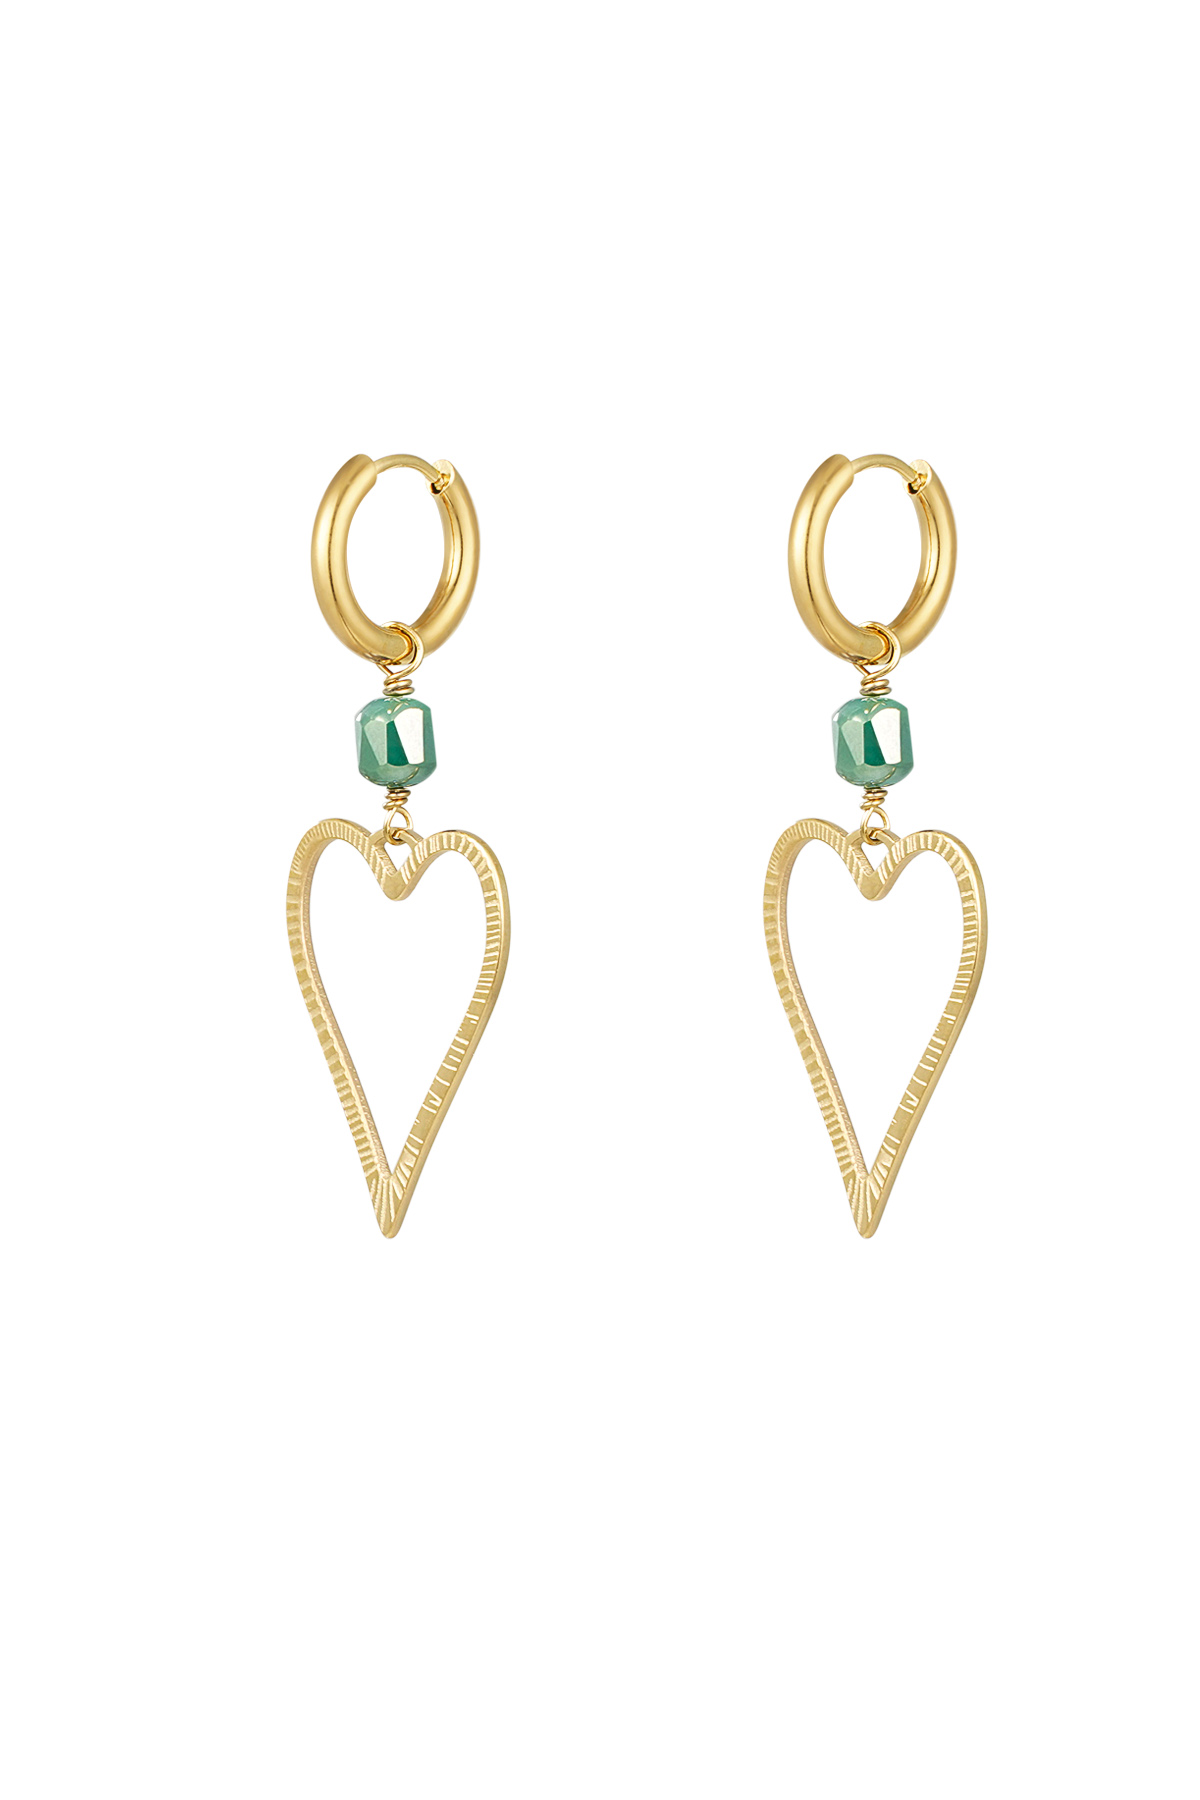 Ohrringe Herz mit Stein - Gold/Grün